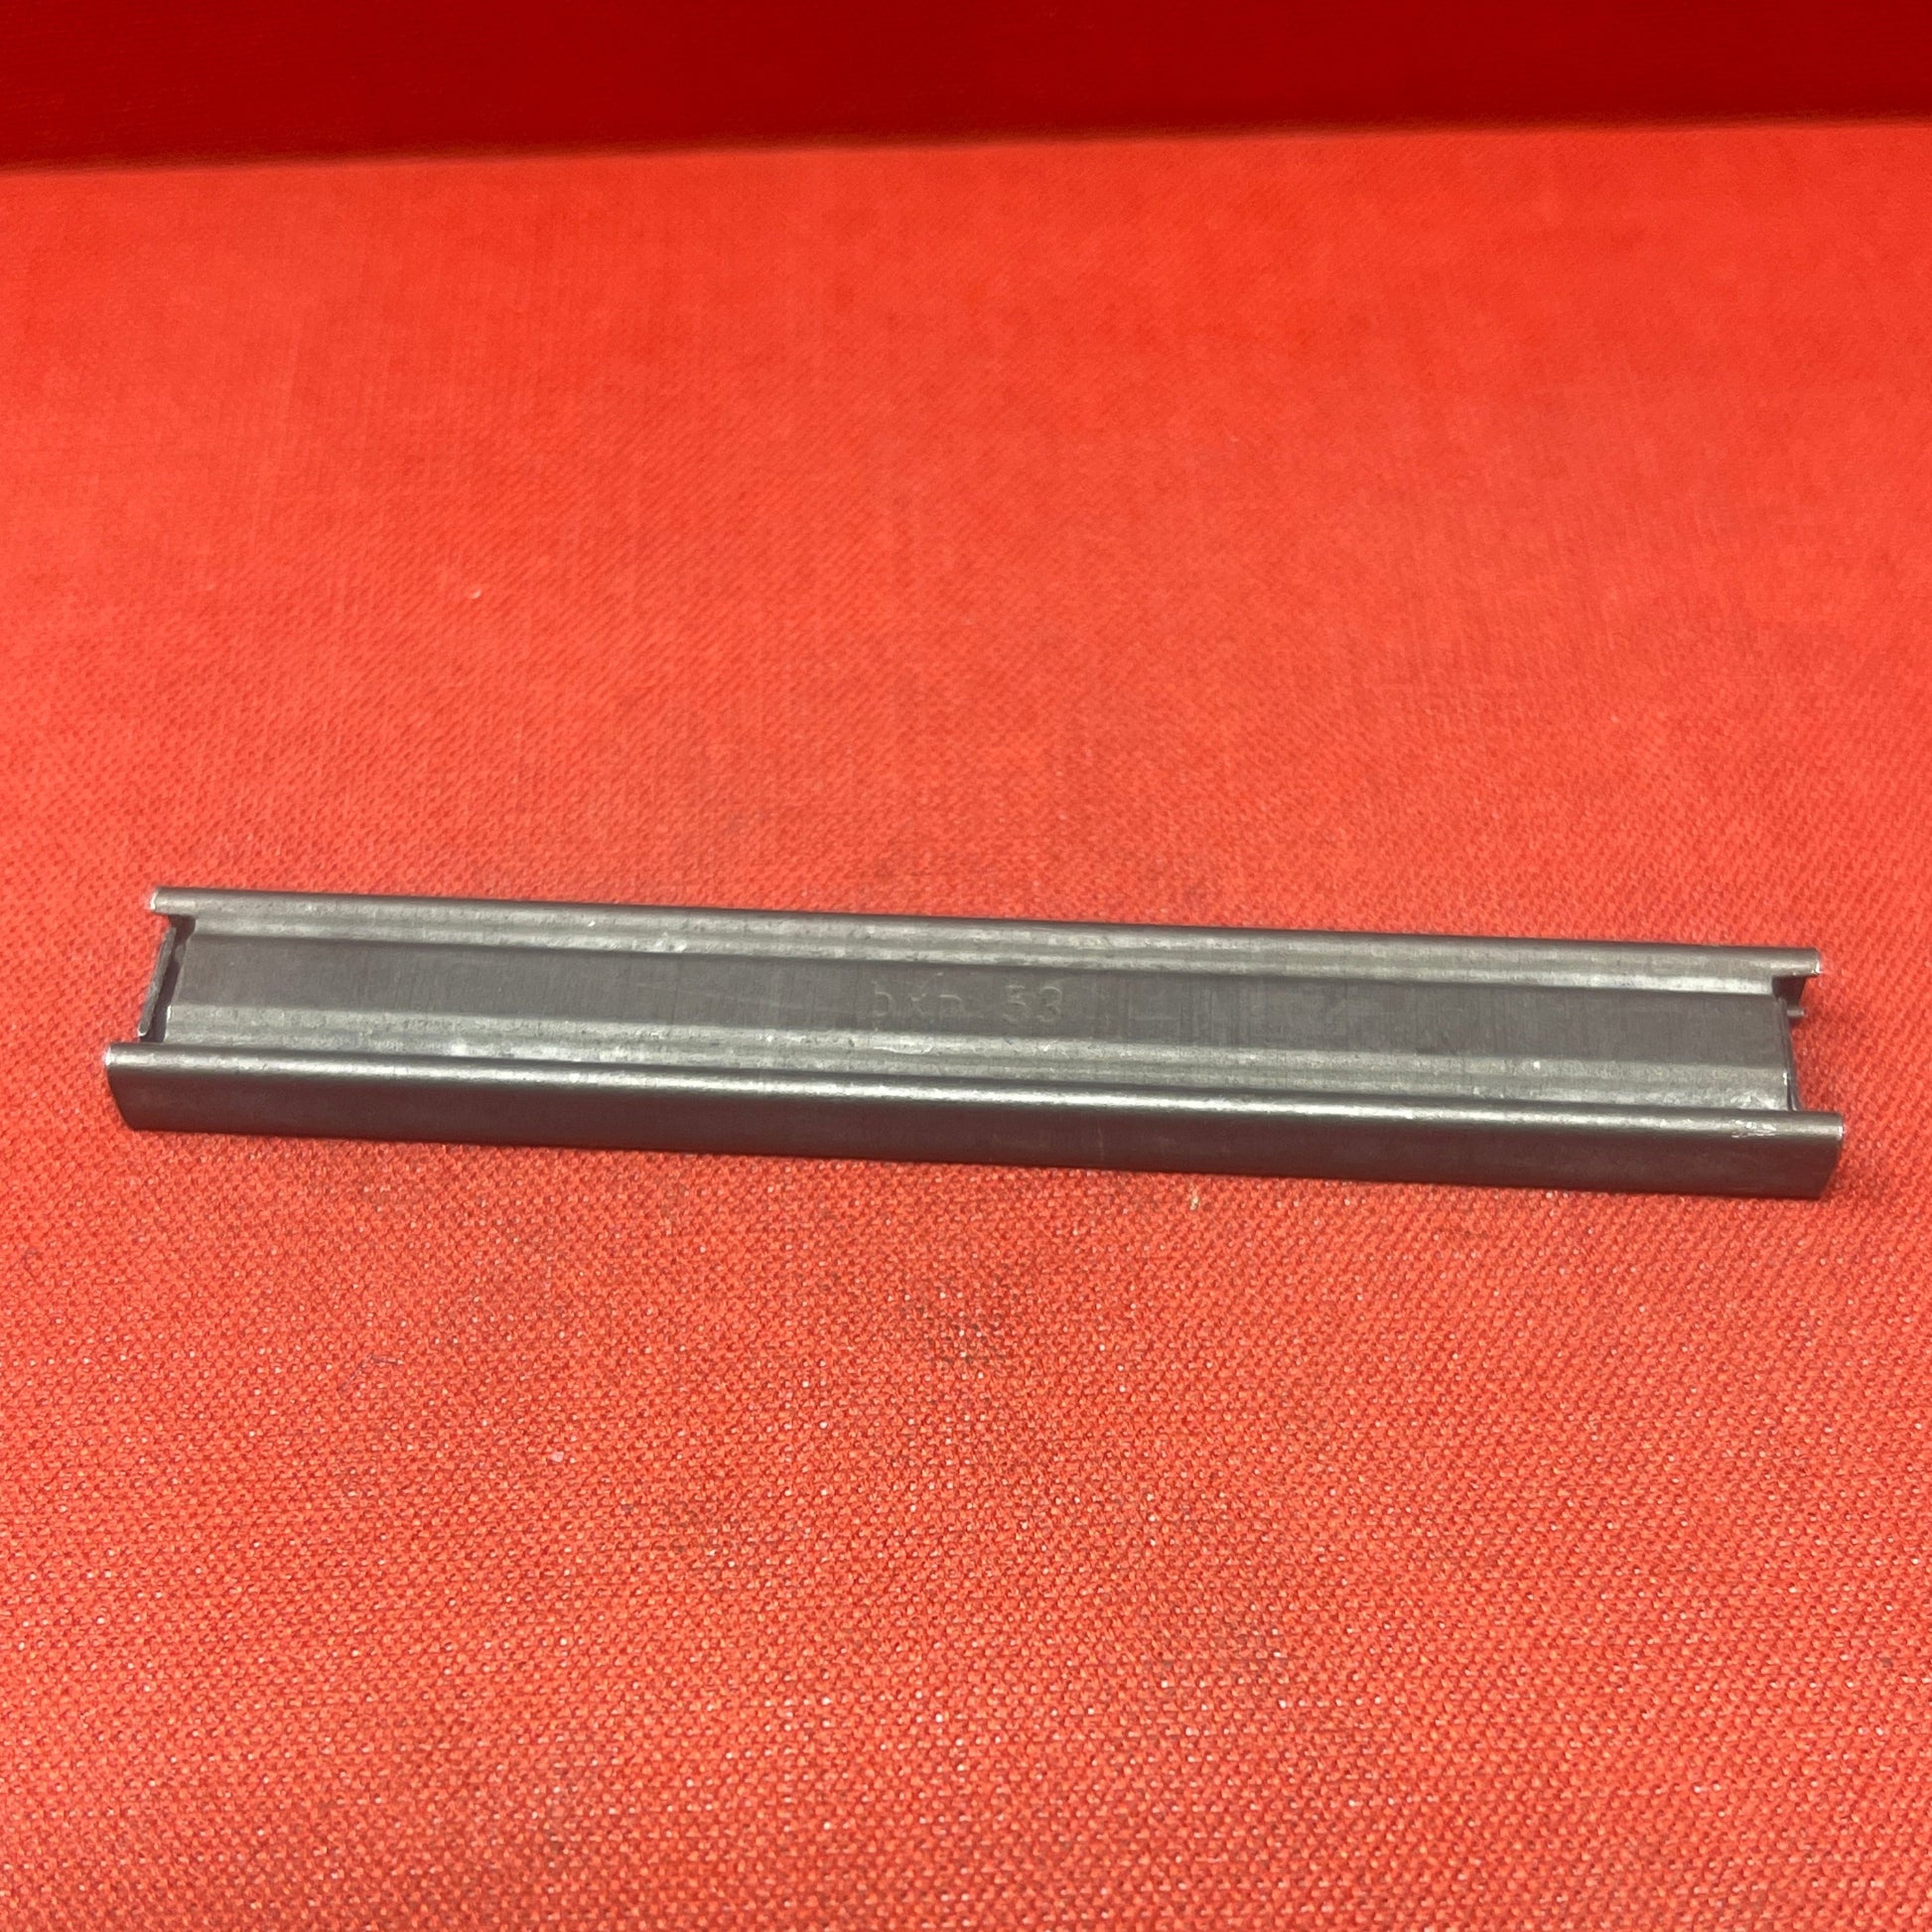 Czech 7,62/9mm stripper clips